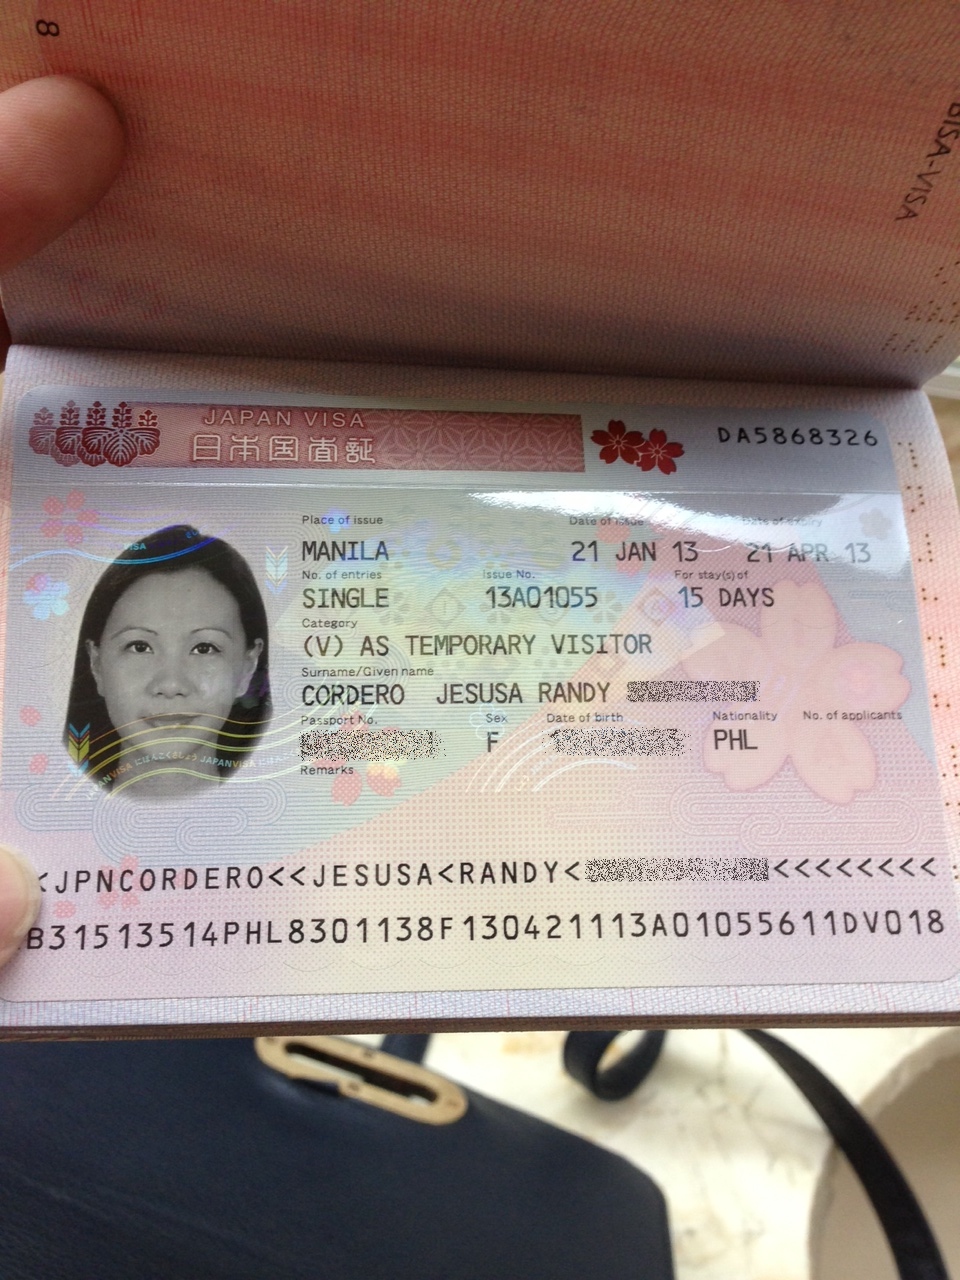 Ms. Jhessy Wandering Free: Filipinos still need a visa to Japan